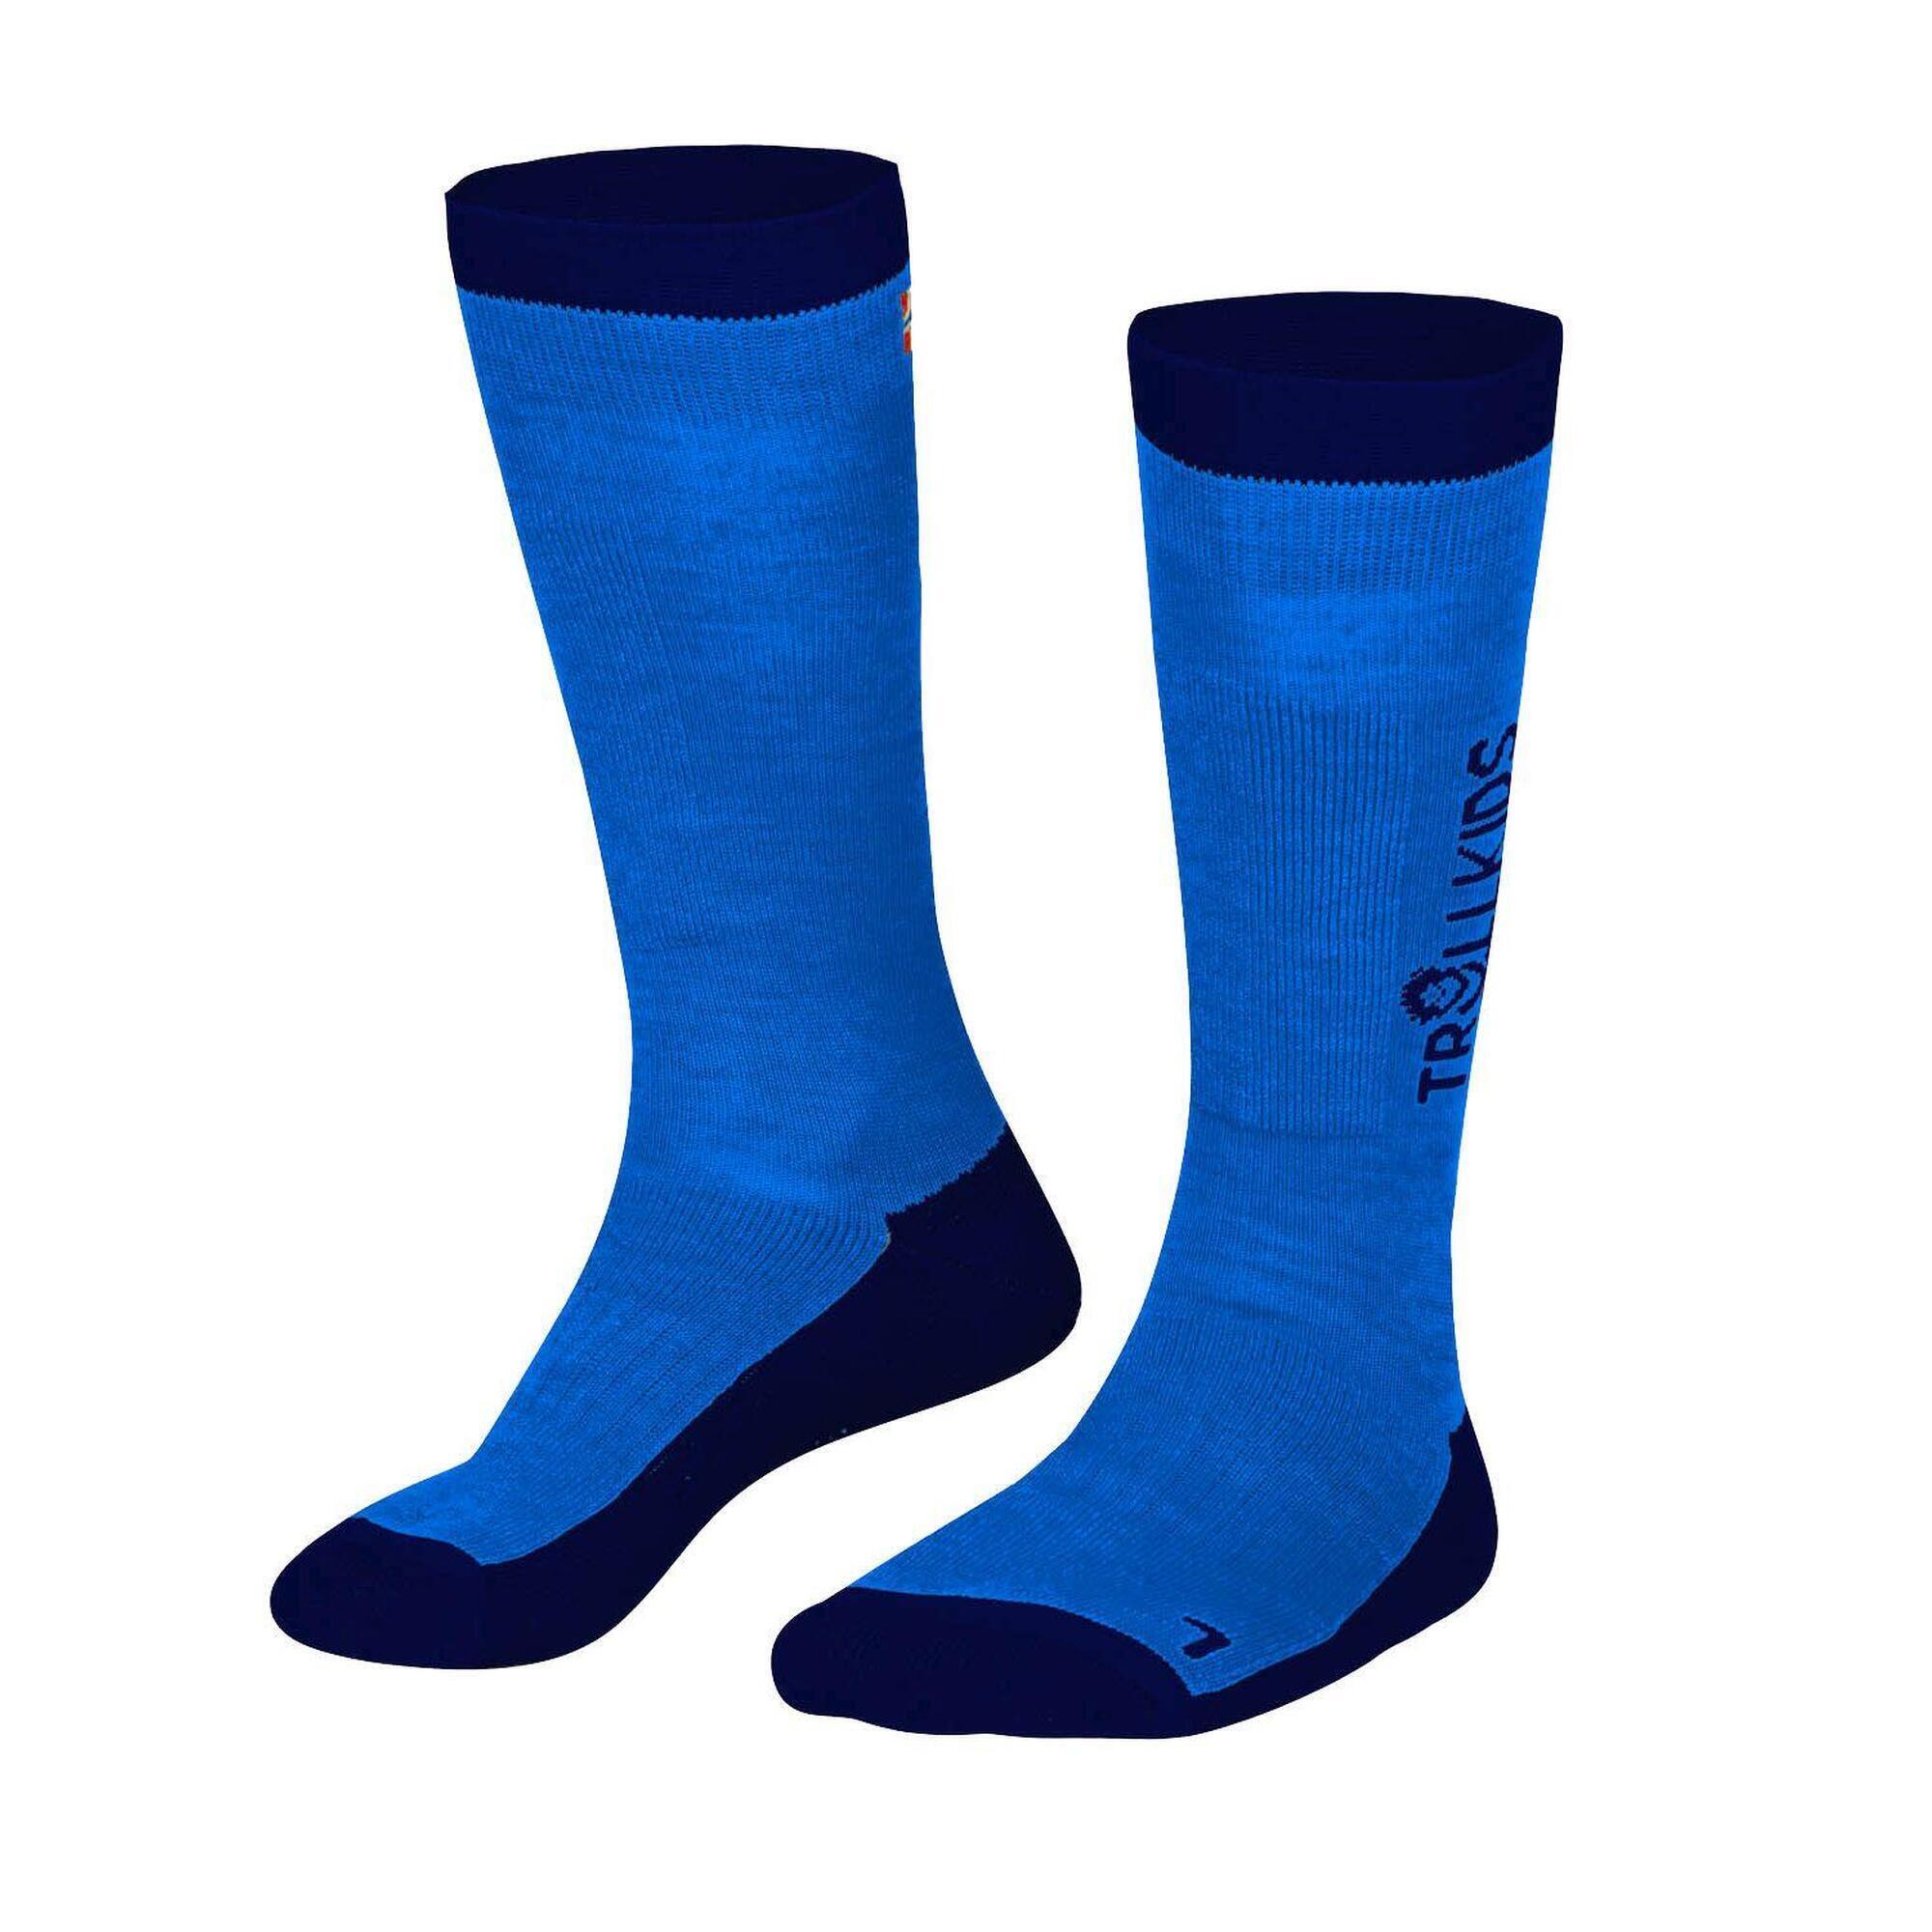 Комплект носков Trollkids Ski, 2 пары, синий/темно-синий комплект носков uniqlo темно синий